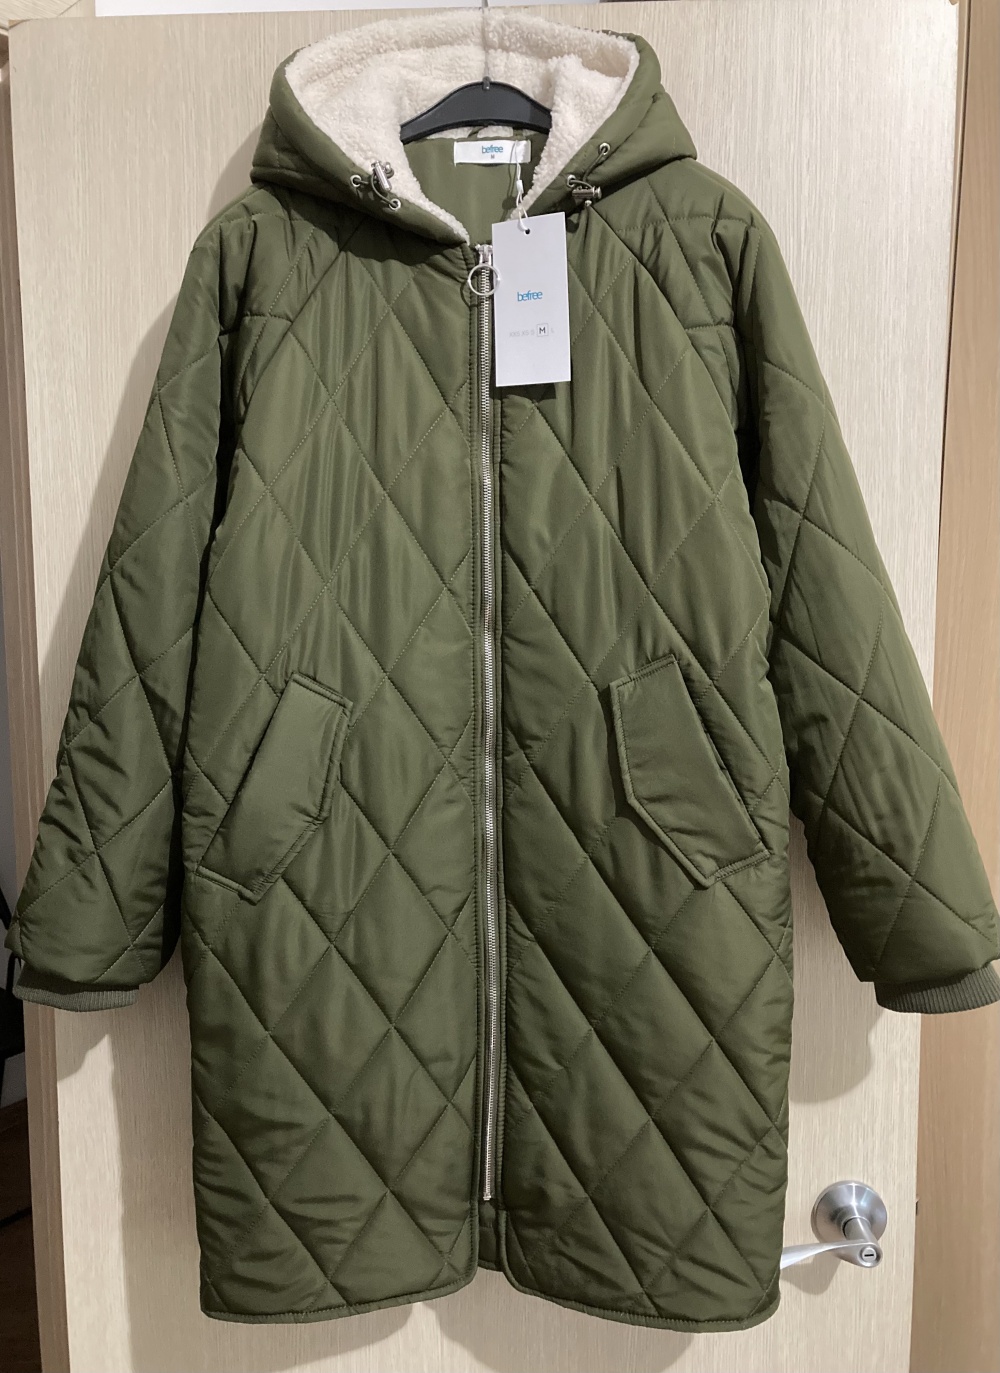 Утеплённое пальто “ Befree “ L размер